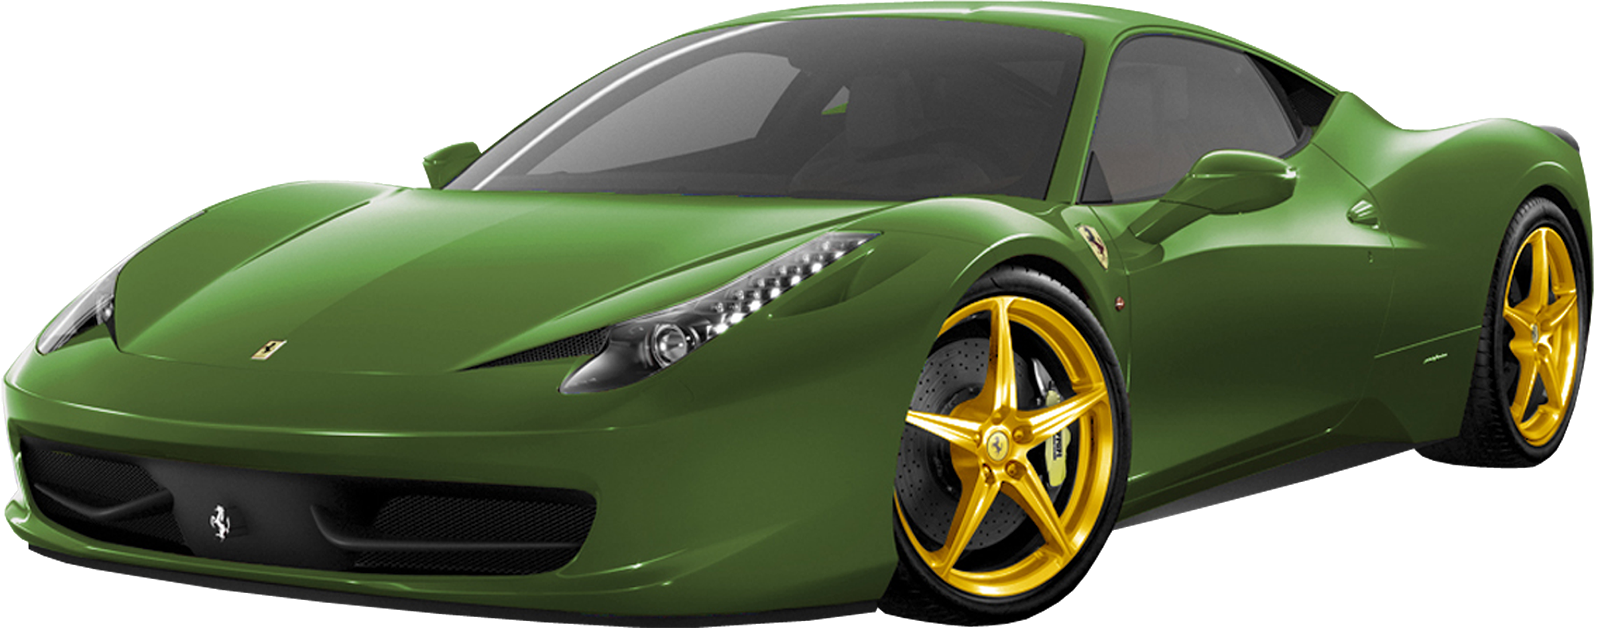 Ferrari hijau